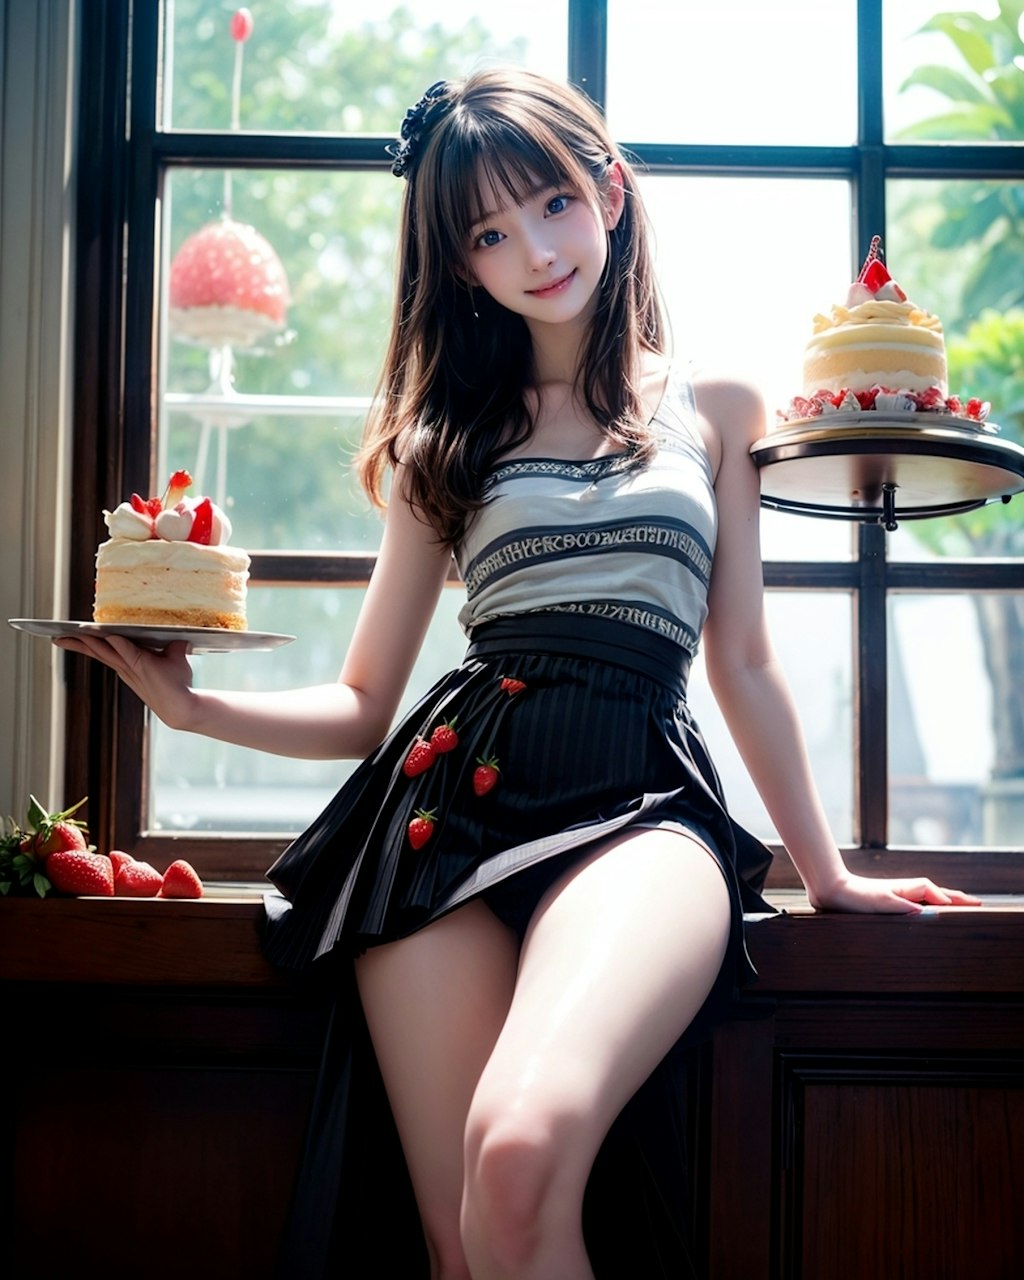 Strawberry Shortcake Girl